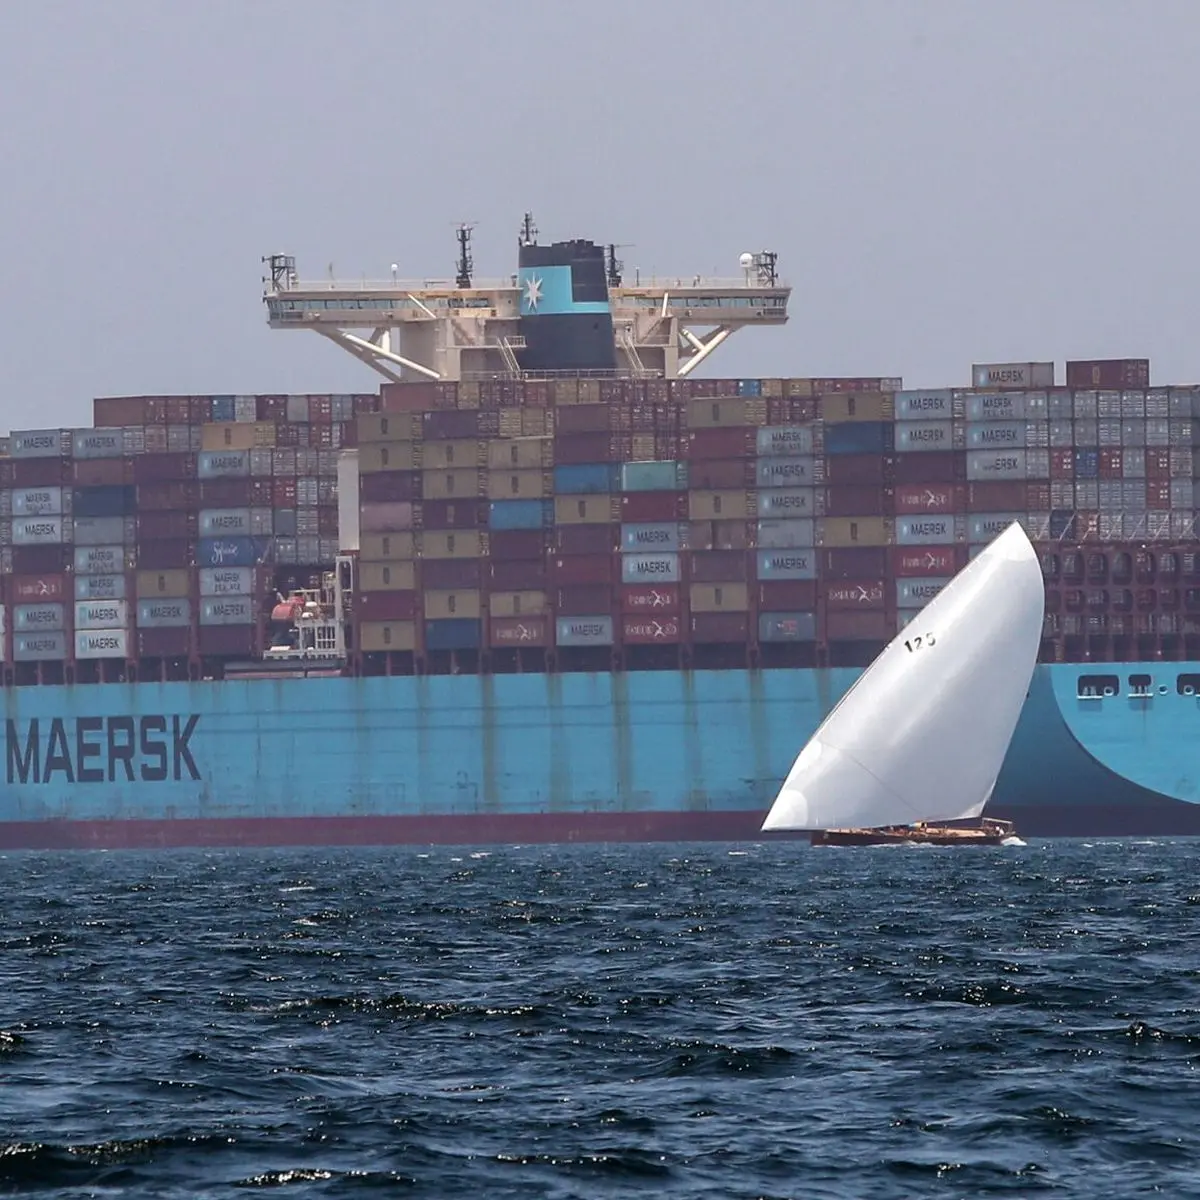 cotizacion flete maritimo maersk - Cómo cotizar en Maersk